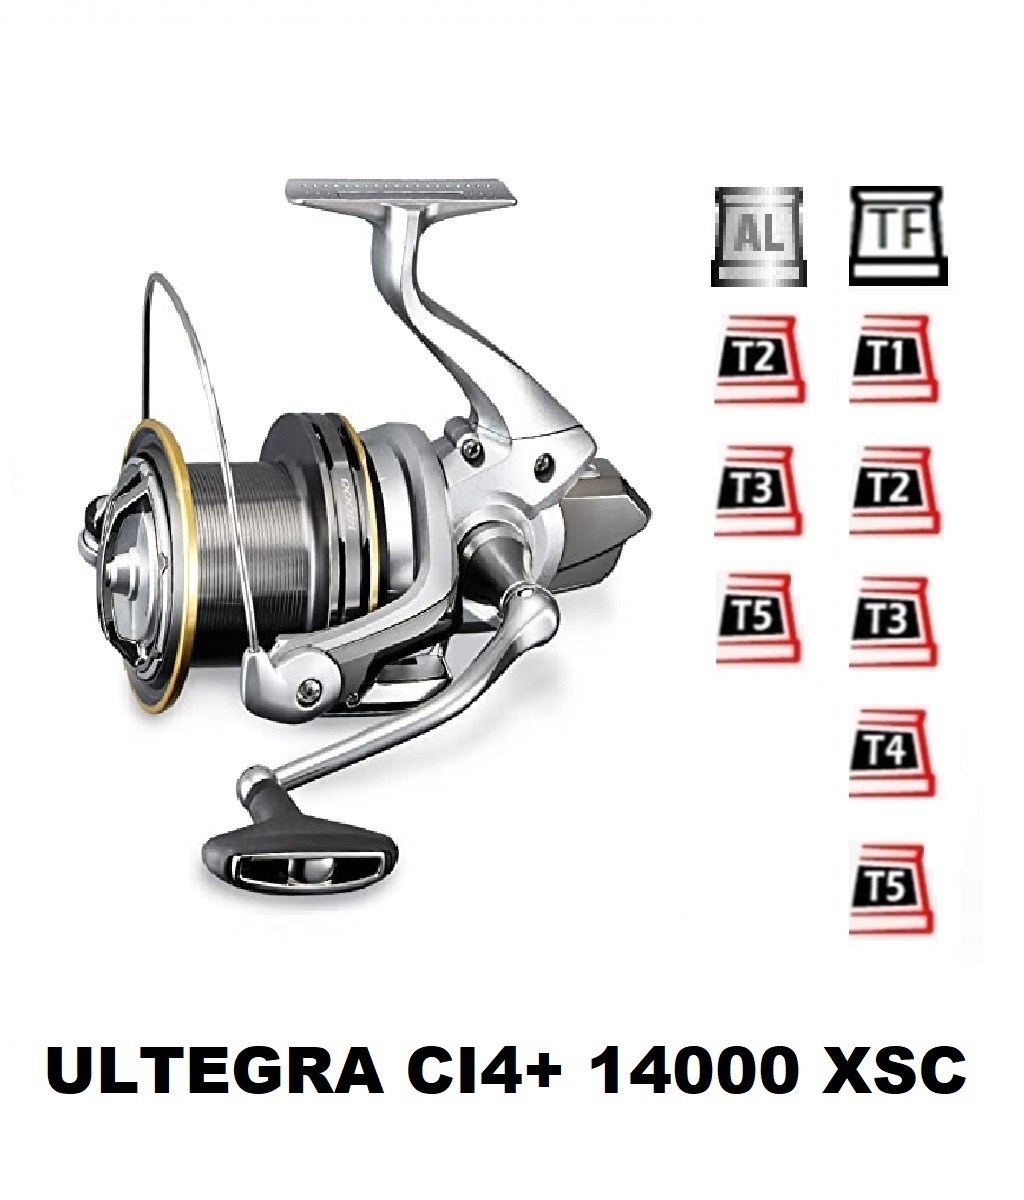 Bobines et accessoires compatibles avec moulinet shimano Ultegra Ci4 14000 Xsa